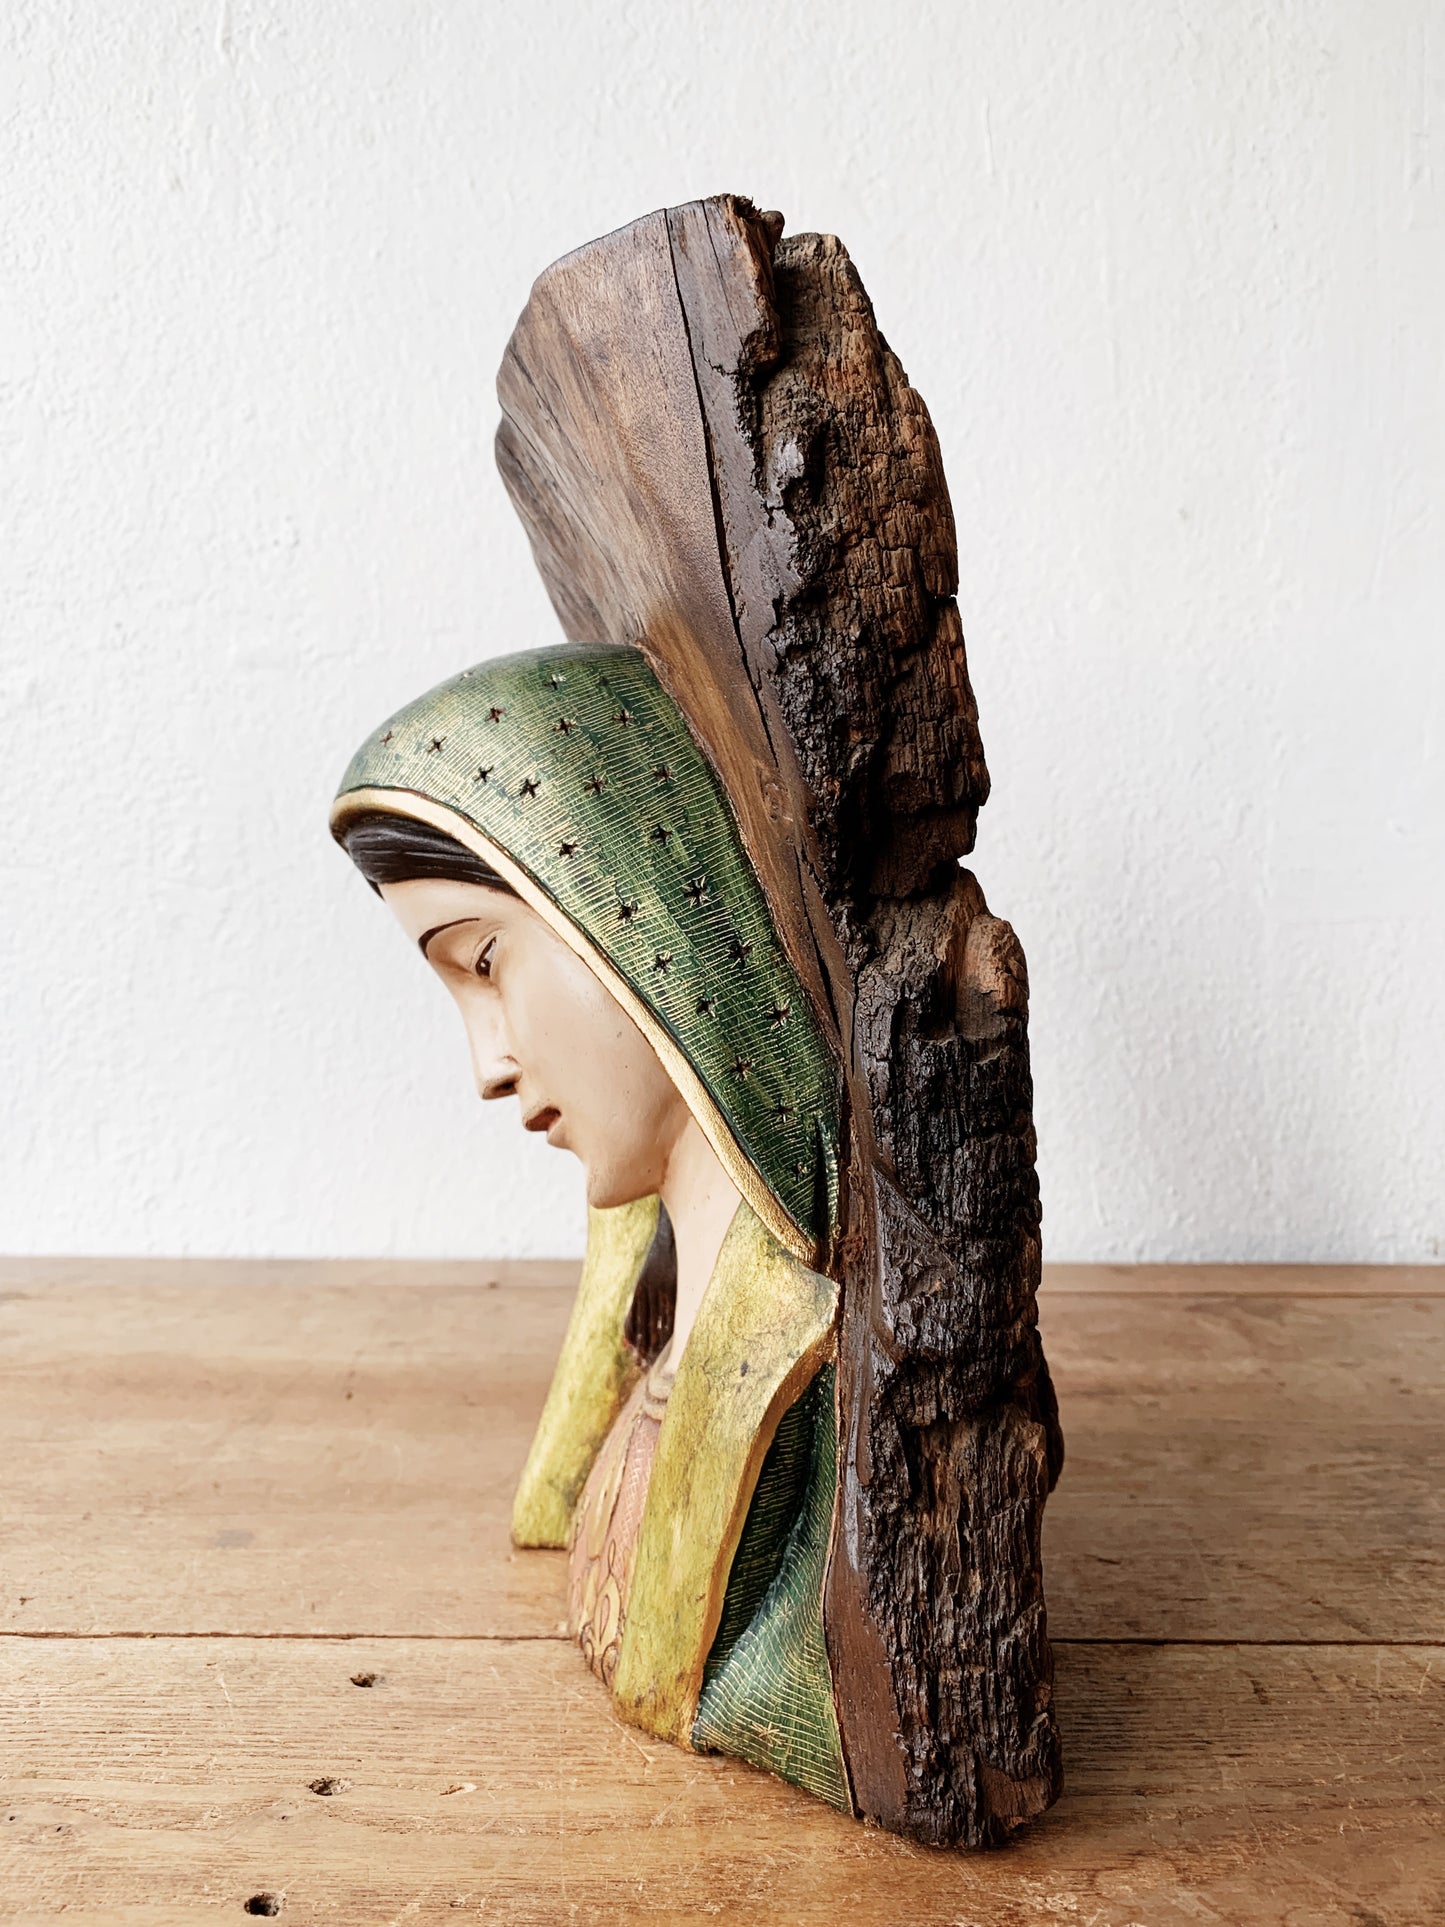 Madonna Carved Wood Sculpture